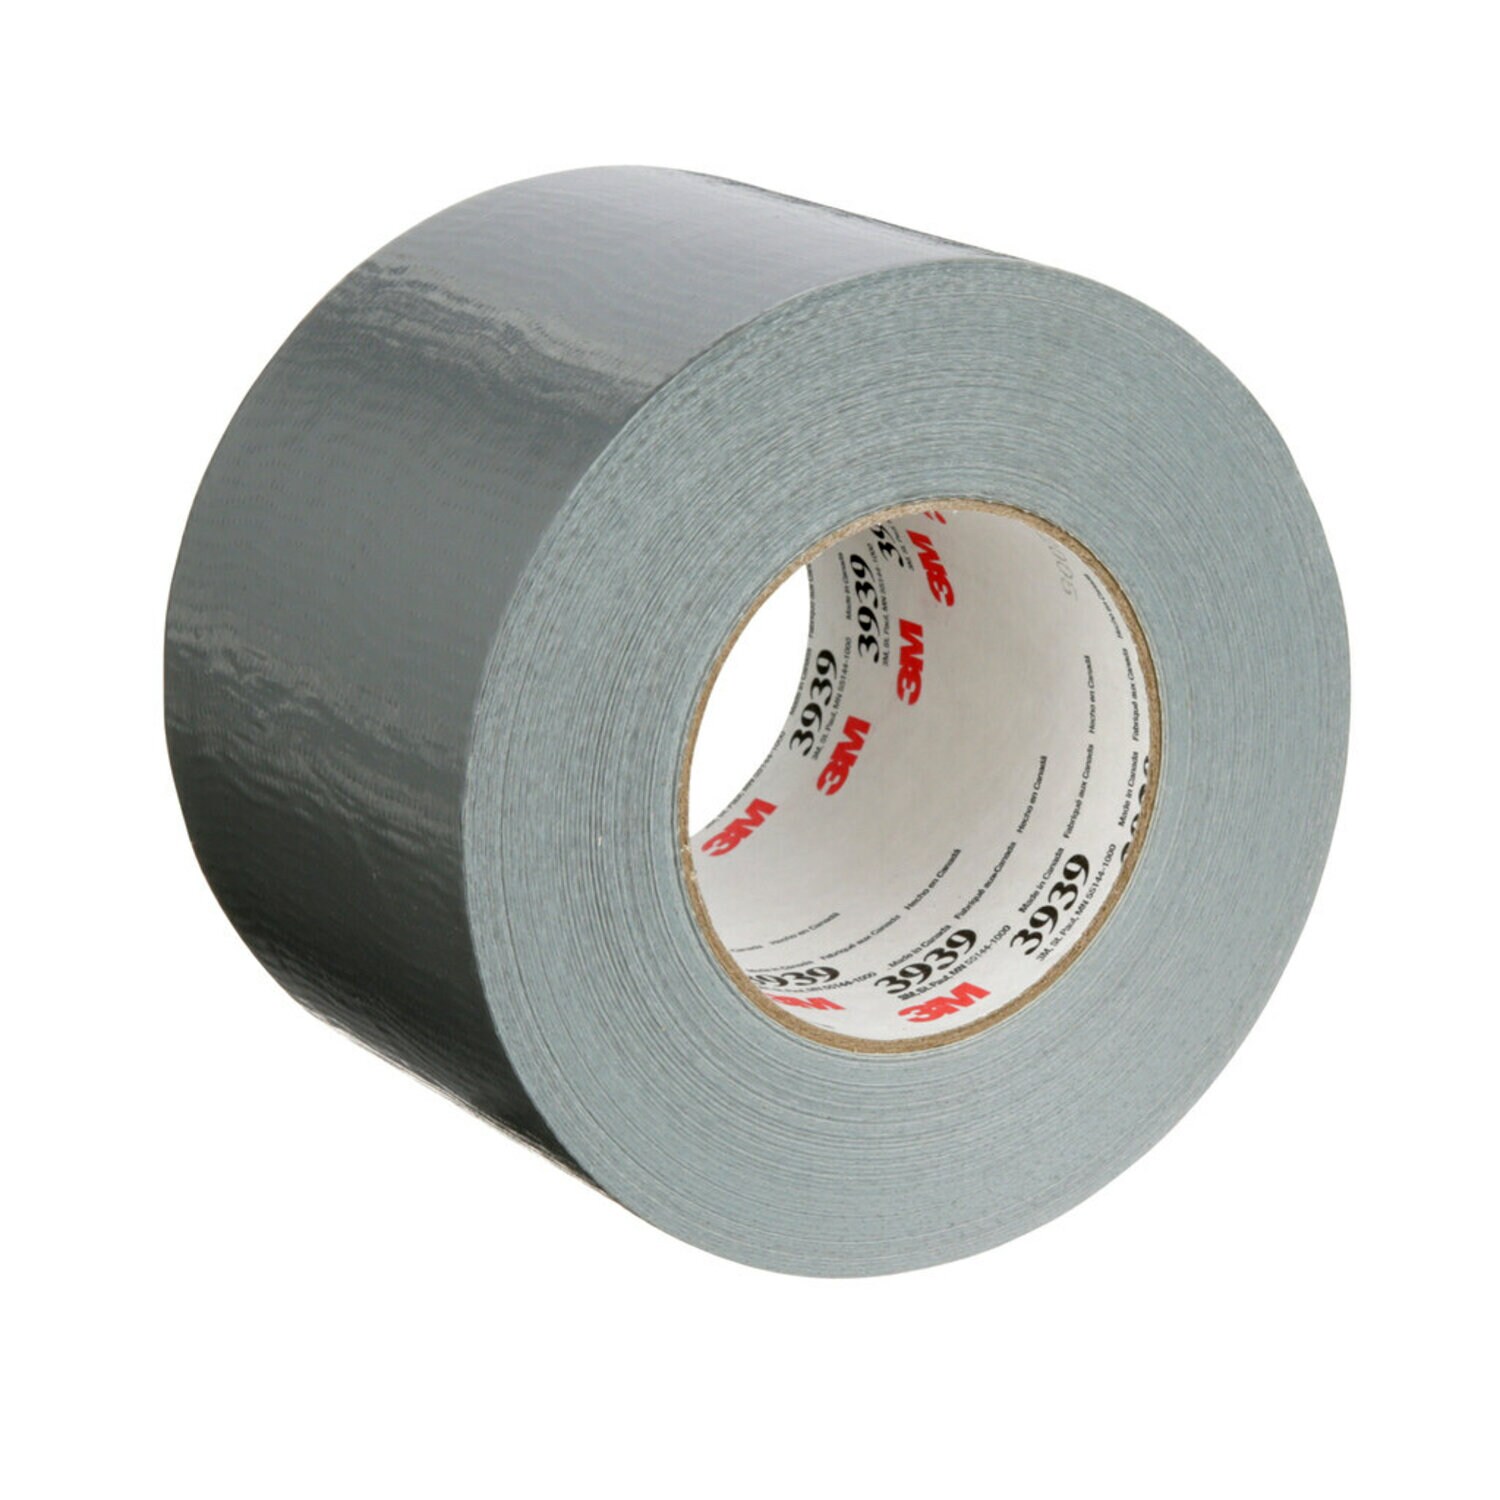 7100022015 - 3M Heavy Duty Duct Tape 3939, Silver, 96 mm x 54.8 m, 9.0 mil, 12
Roll/Case